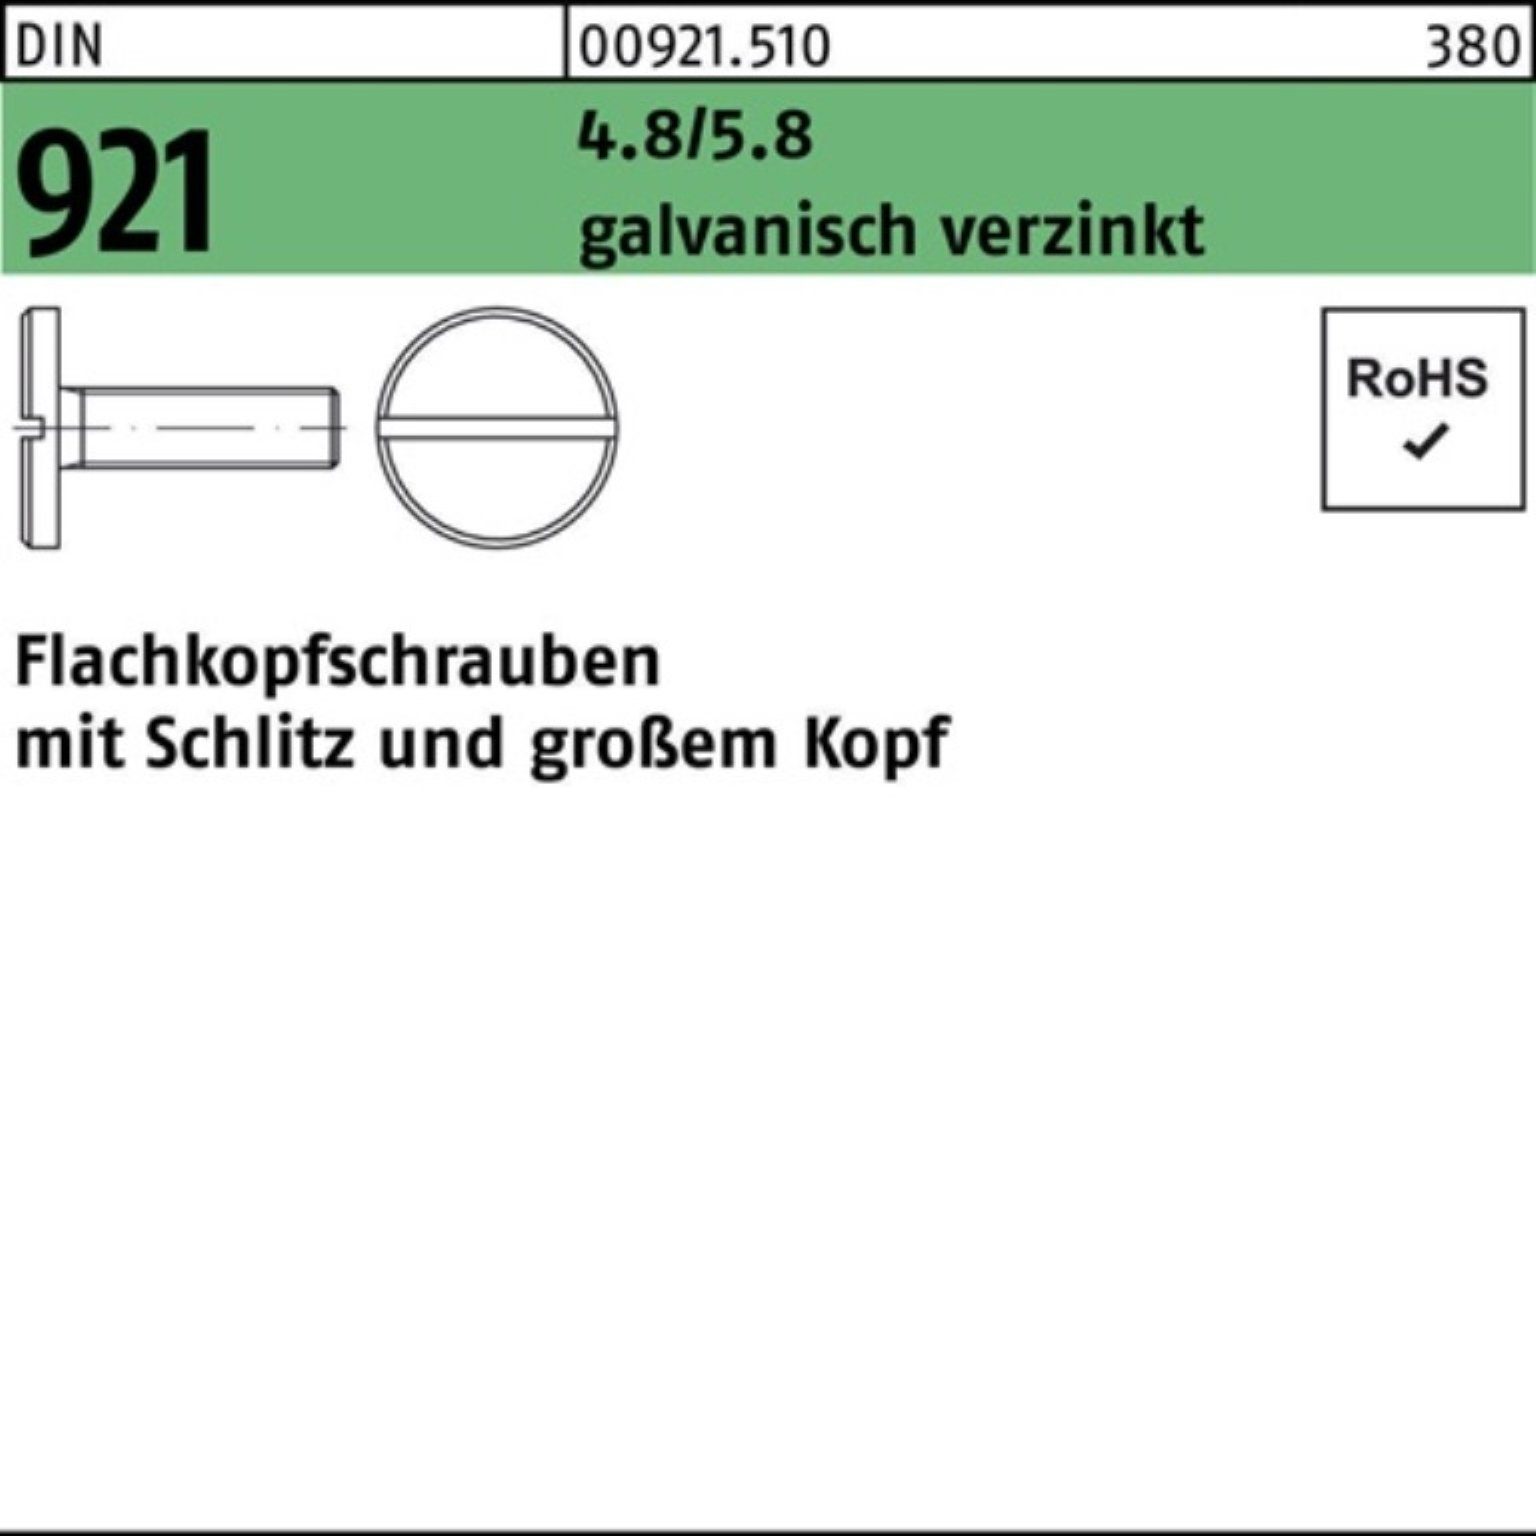 Klicken Sie hier für Informationen zu Reyher Schraube 100er Pack Flachkopfschraube 921 6 M5x Schlitz DIN galv.verz. 4.8/5.8